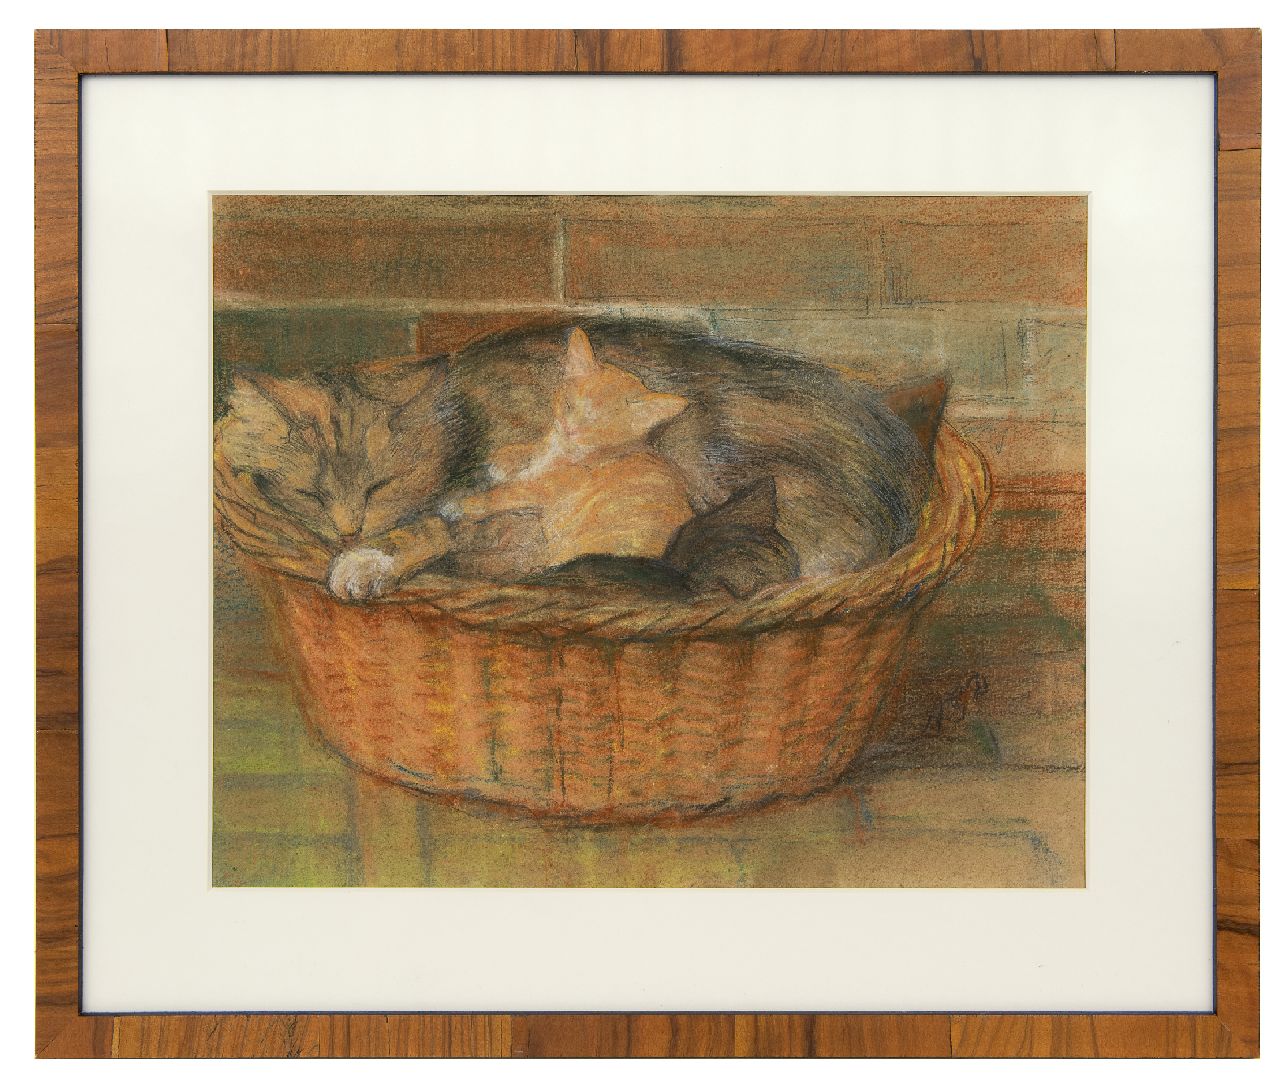 Dyserinck A.G.  | Adrienne Gertrude 'Attie' Dyserinck, Moederkat met kittens in een mand, pastel op papier 31,9 x 40,0 cm, gesigneerd rechtsonder met initialen